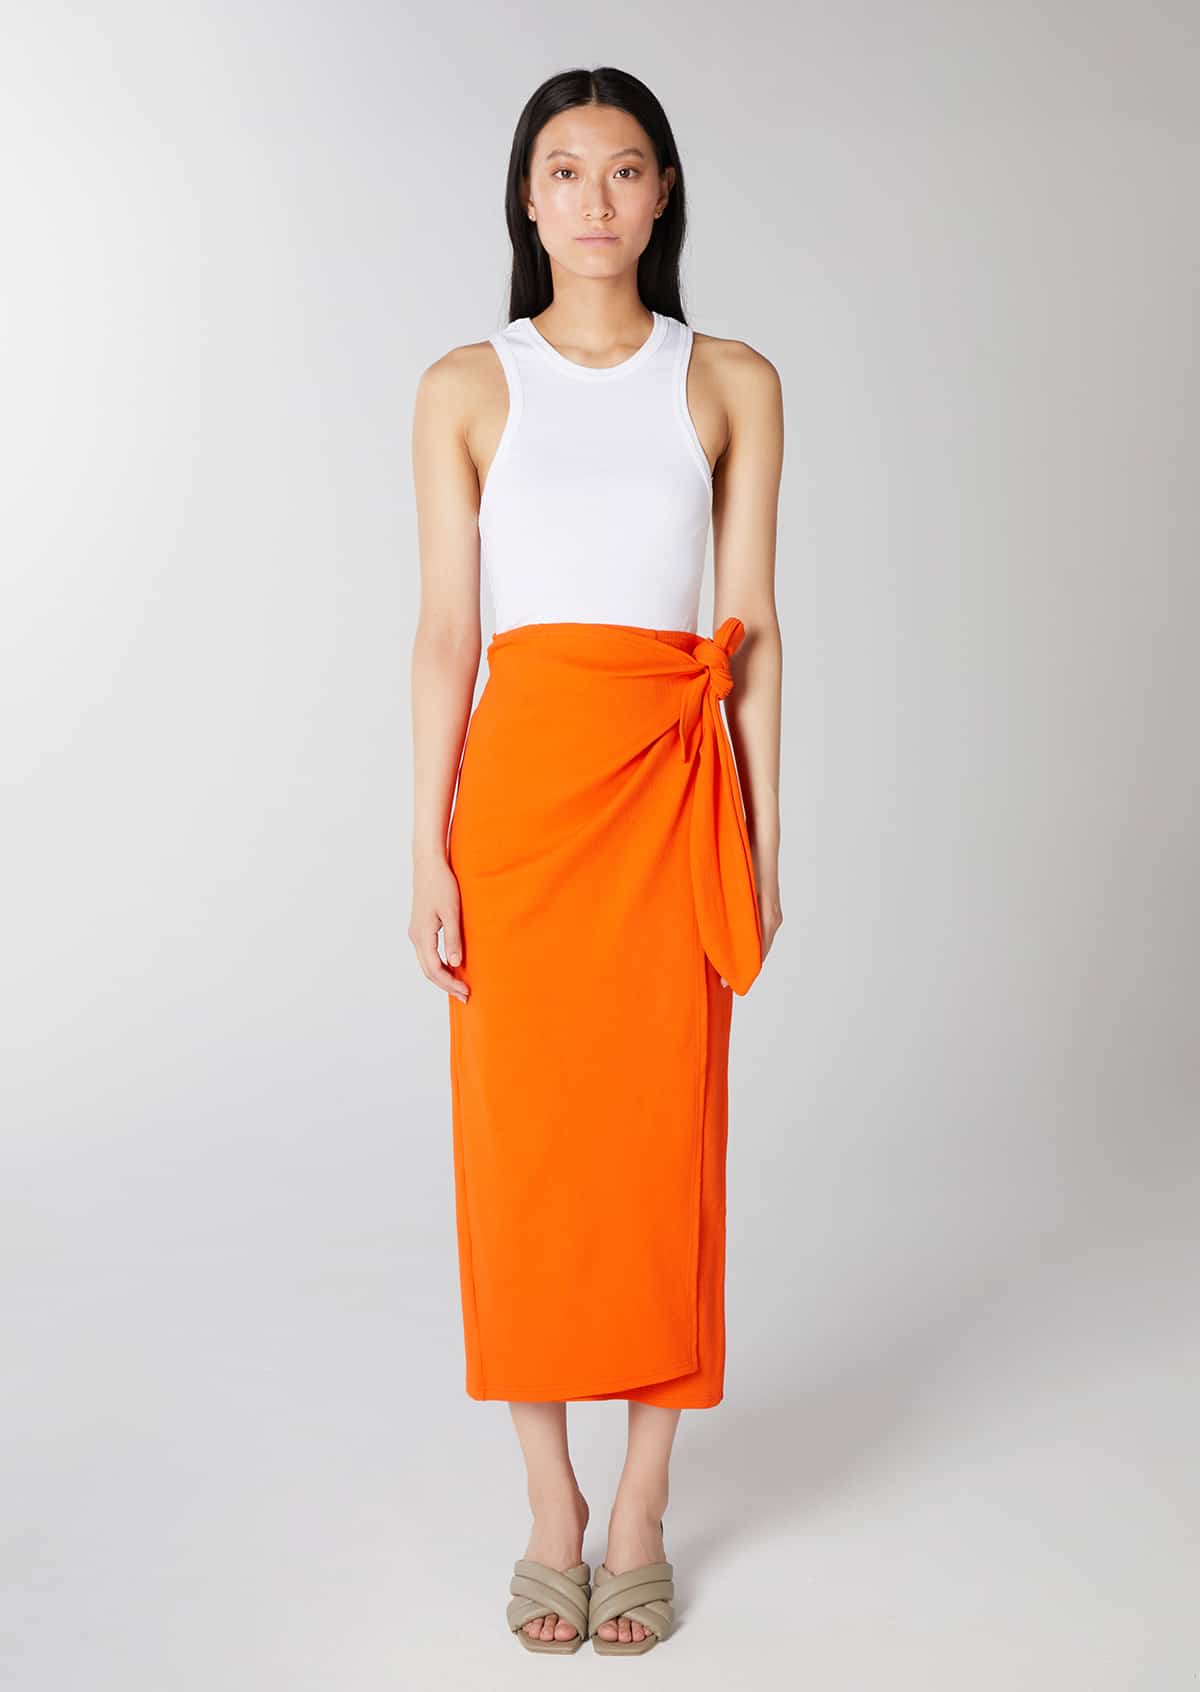 The Sarong Skirt Orange